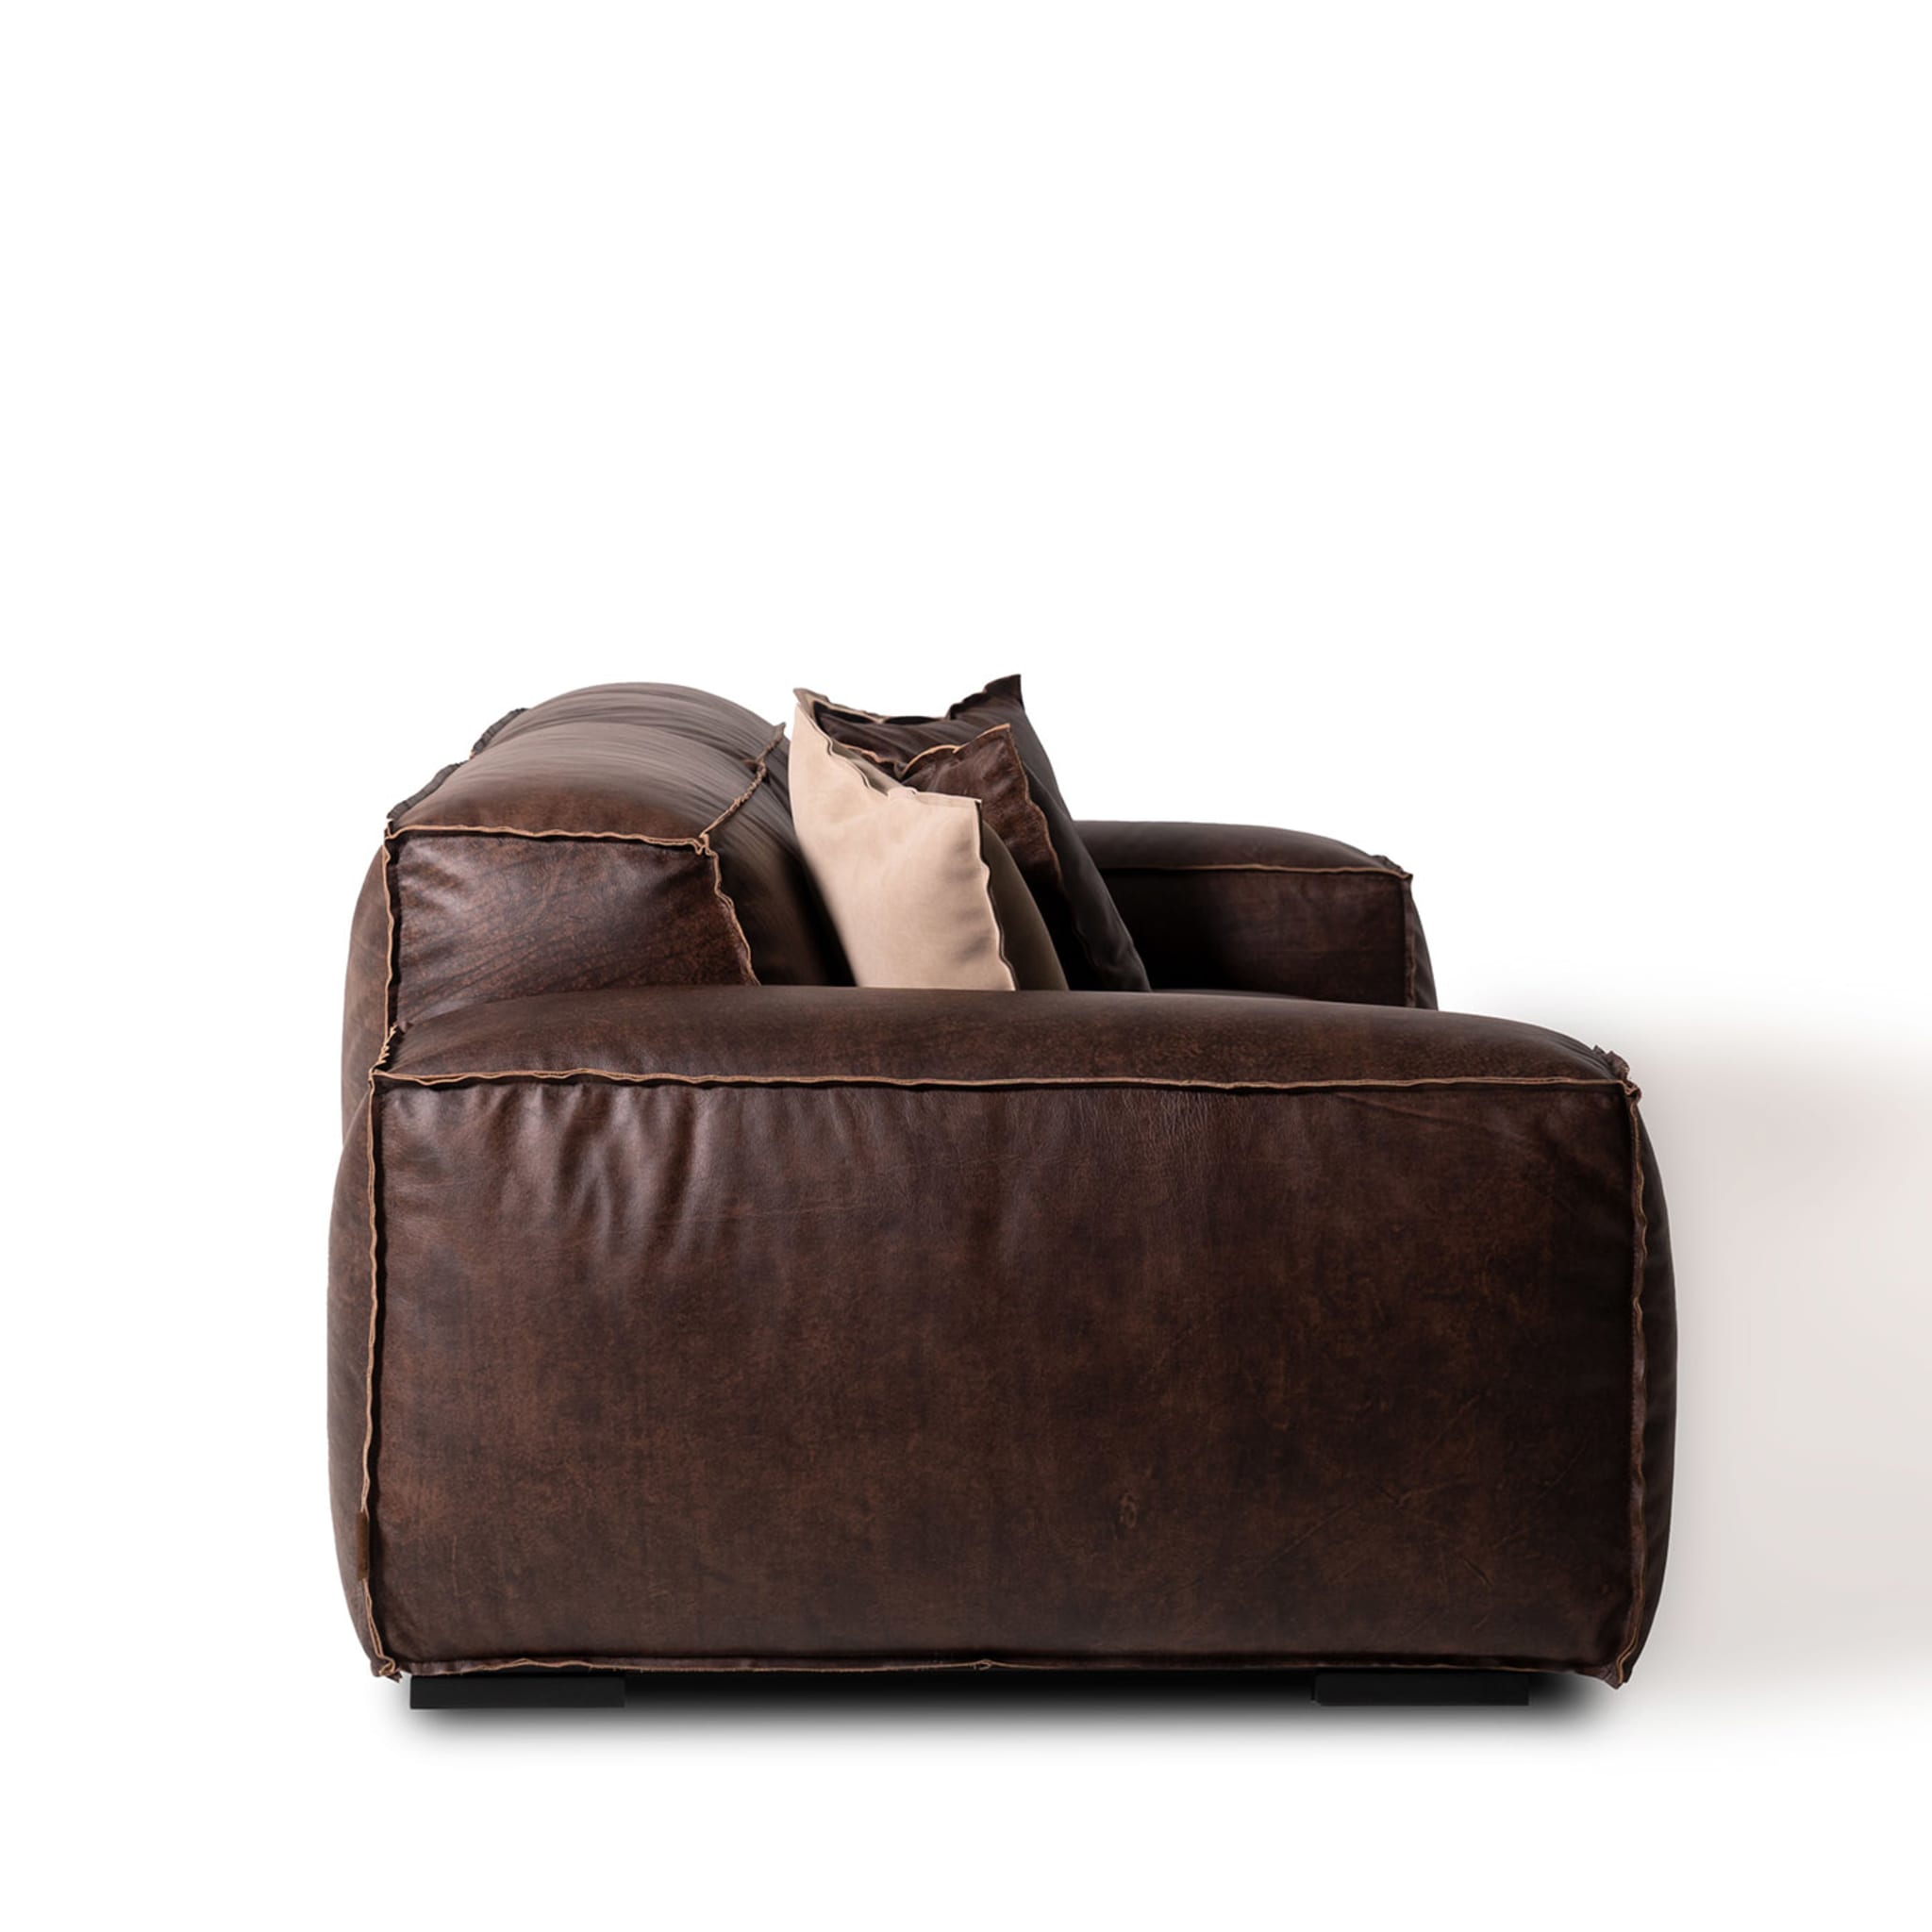 Placido 2 Seater Sofa Maxi by Marco and Giulio Mantellassi  - Alternative view 2